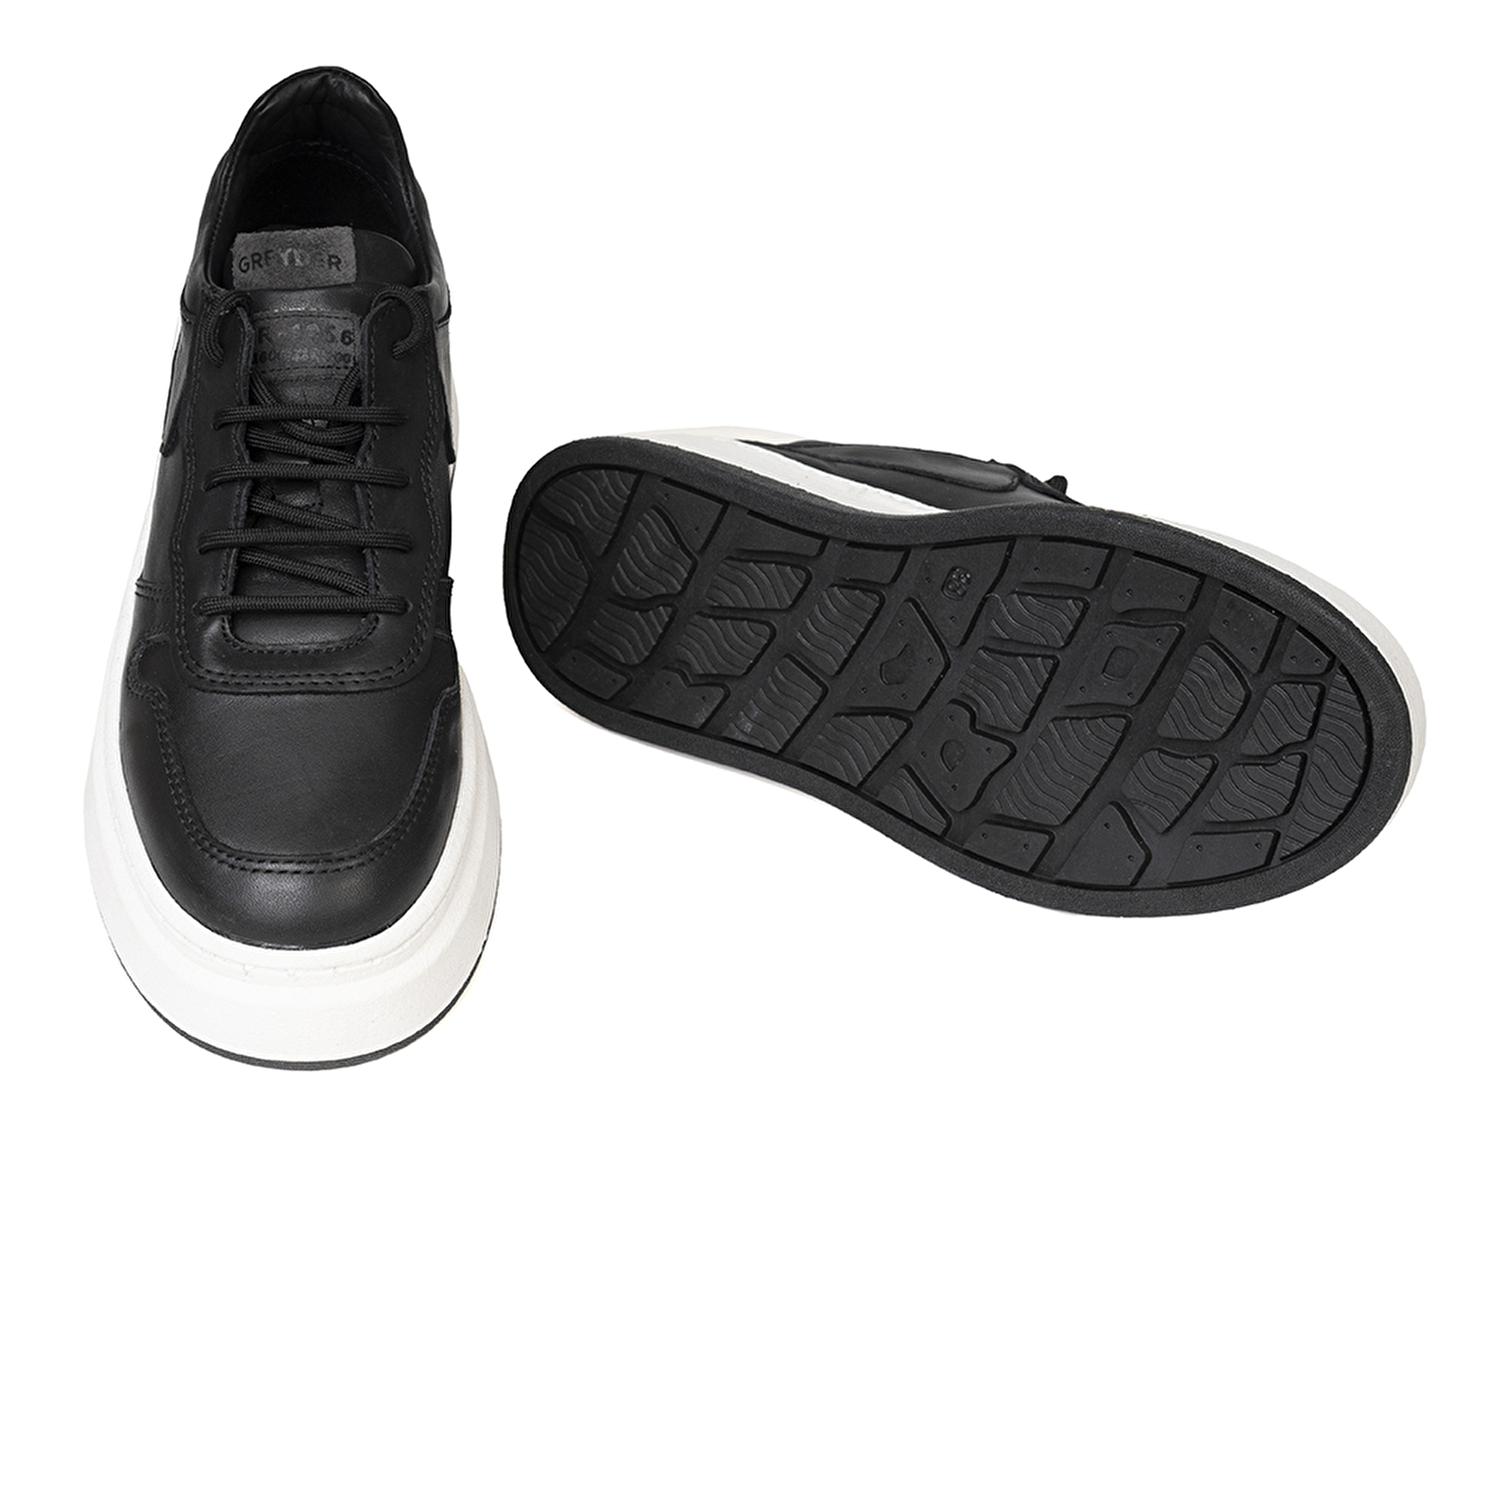 Kadın Siyah Hakiki Deri Sneaker Ayakkabı 3K2SA33120-5